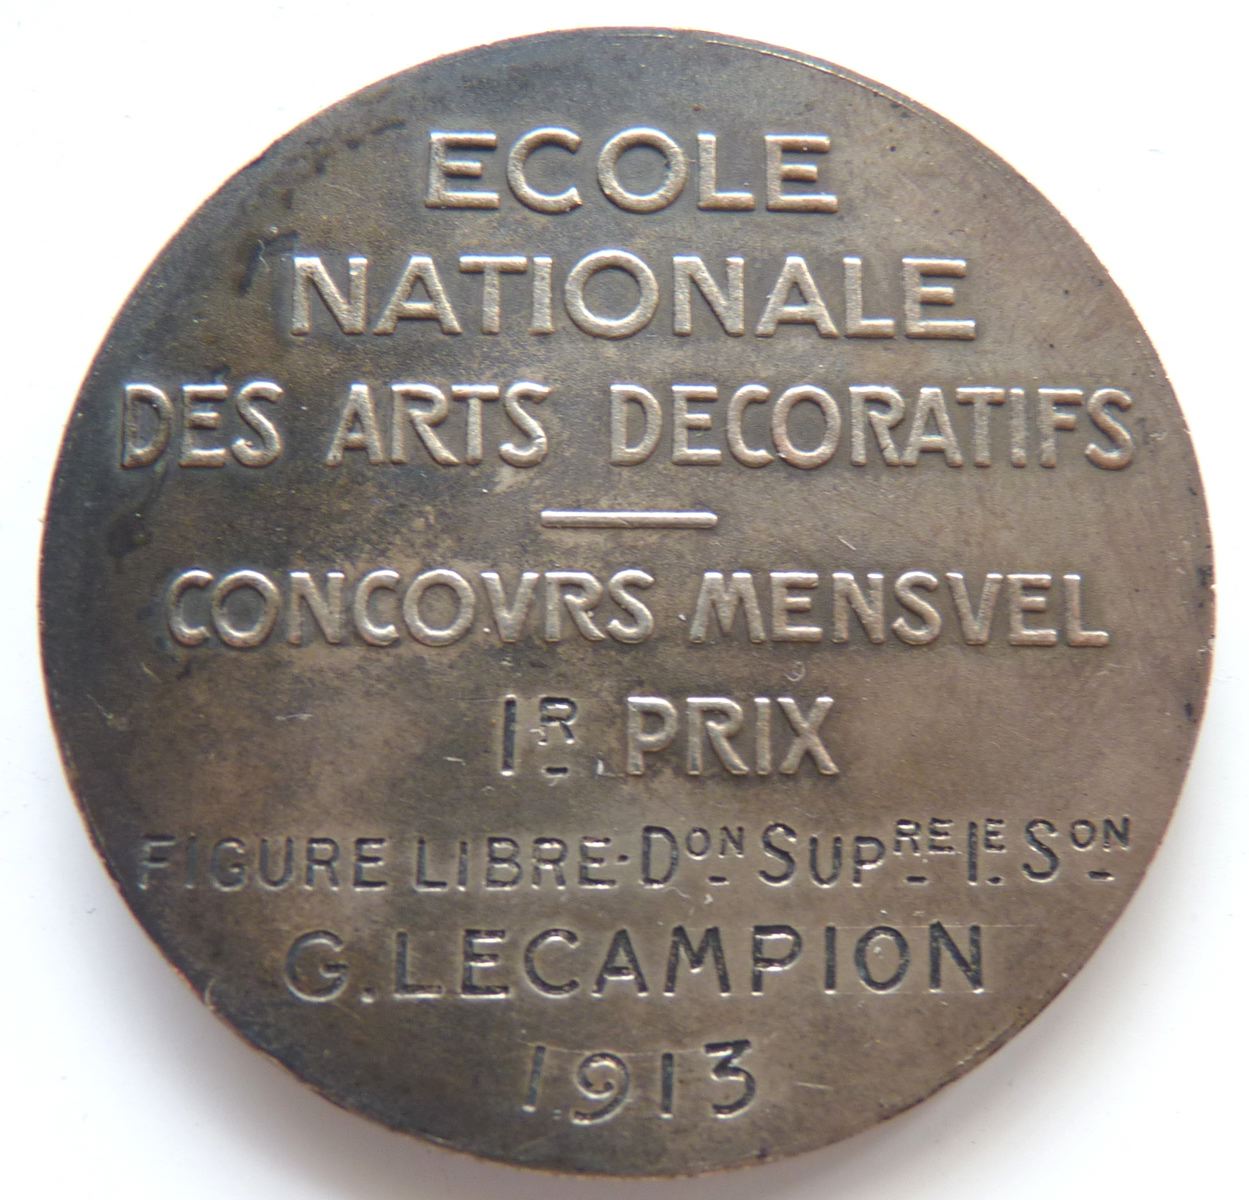 Ecole Nationale des Arts Décoratifs - Concours Mensuel 1er prix - Figure Libre - G. Lecampion 1913